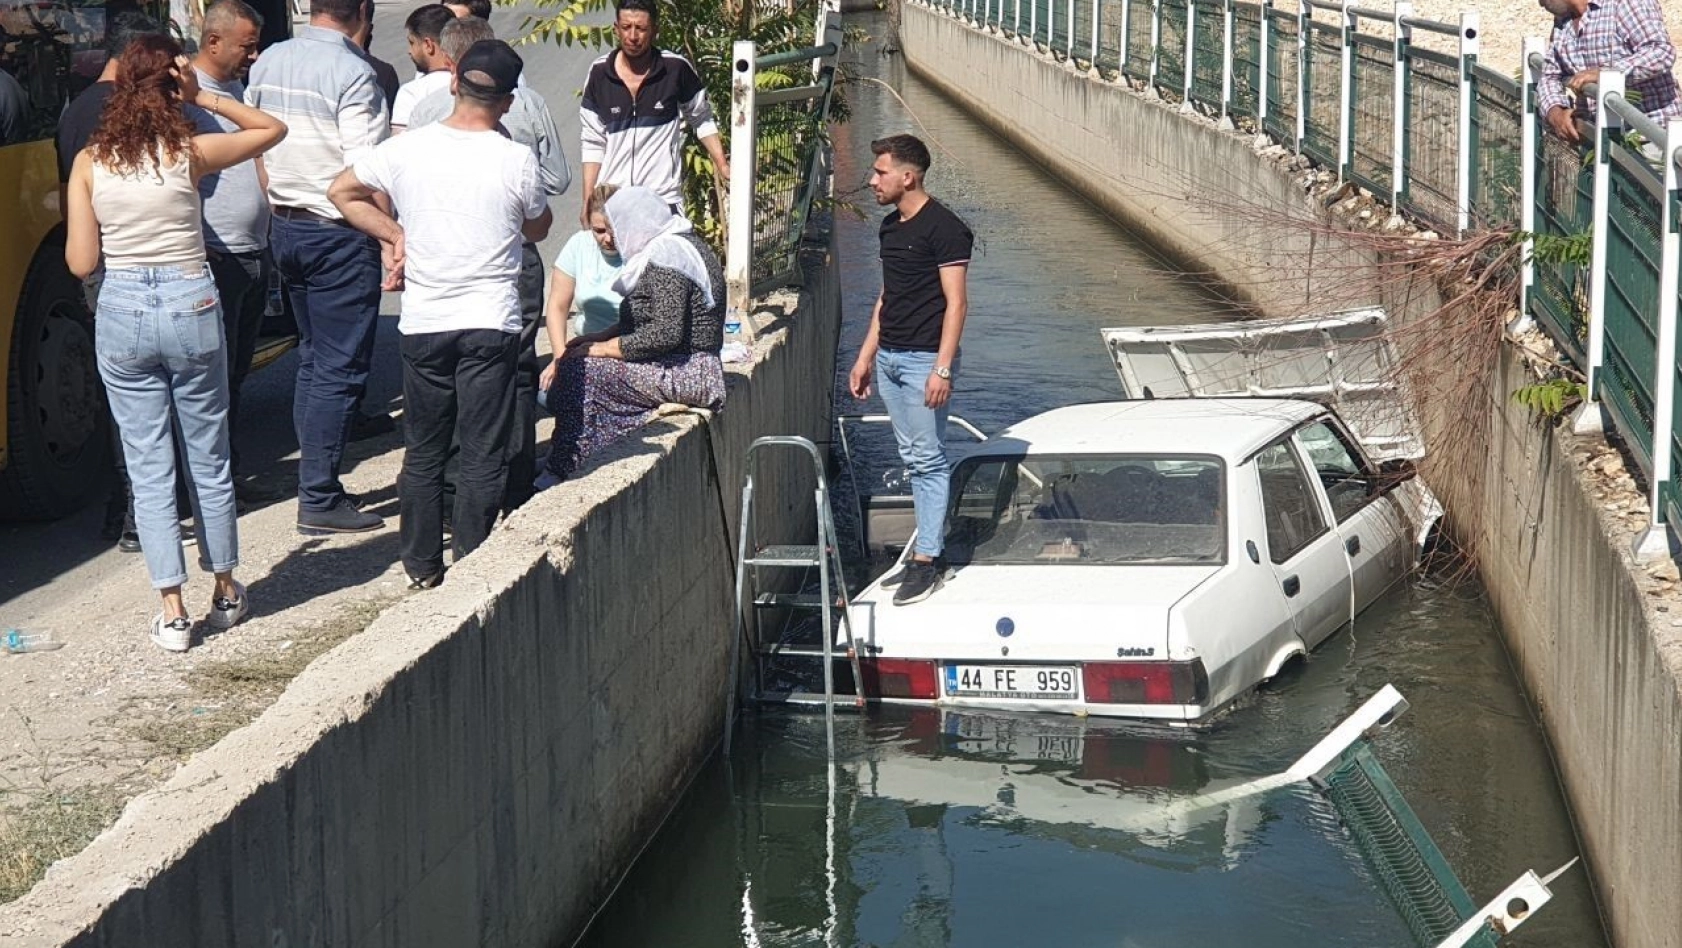 Sulama kanalına uçan araçtaki 2 kişiyi vatandaşlar kurtardı